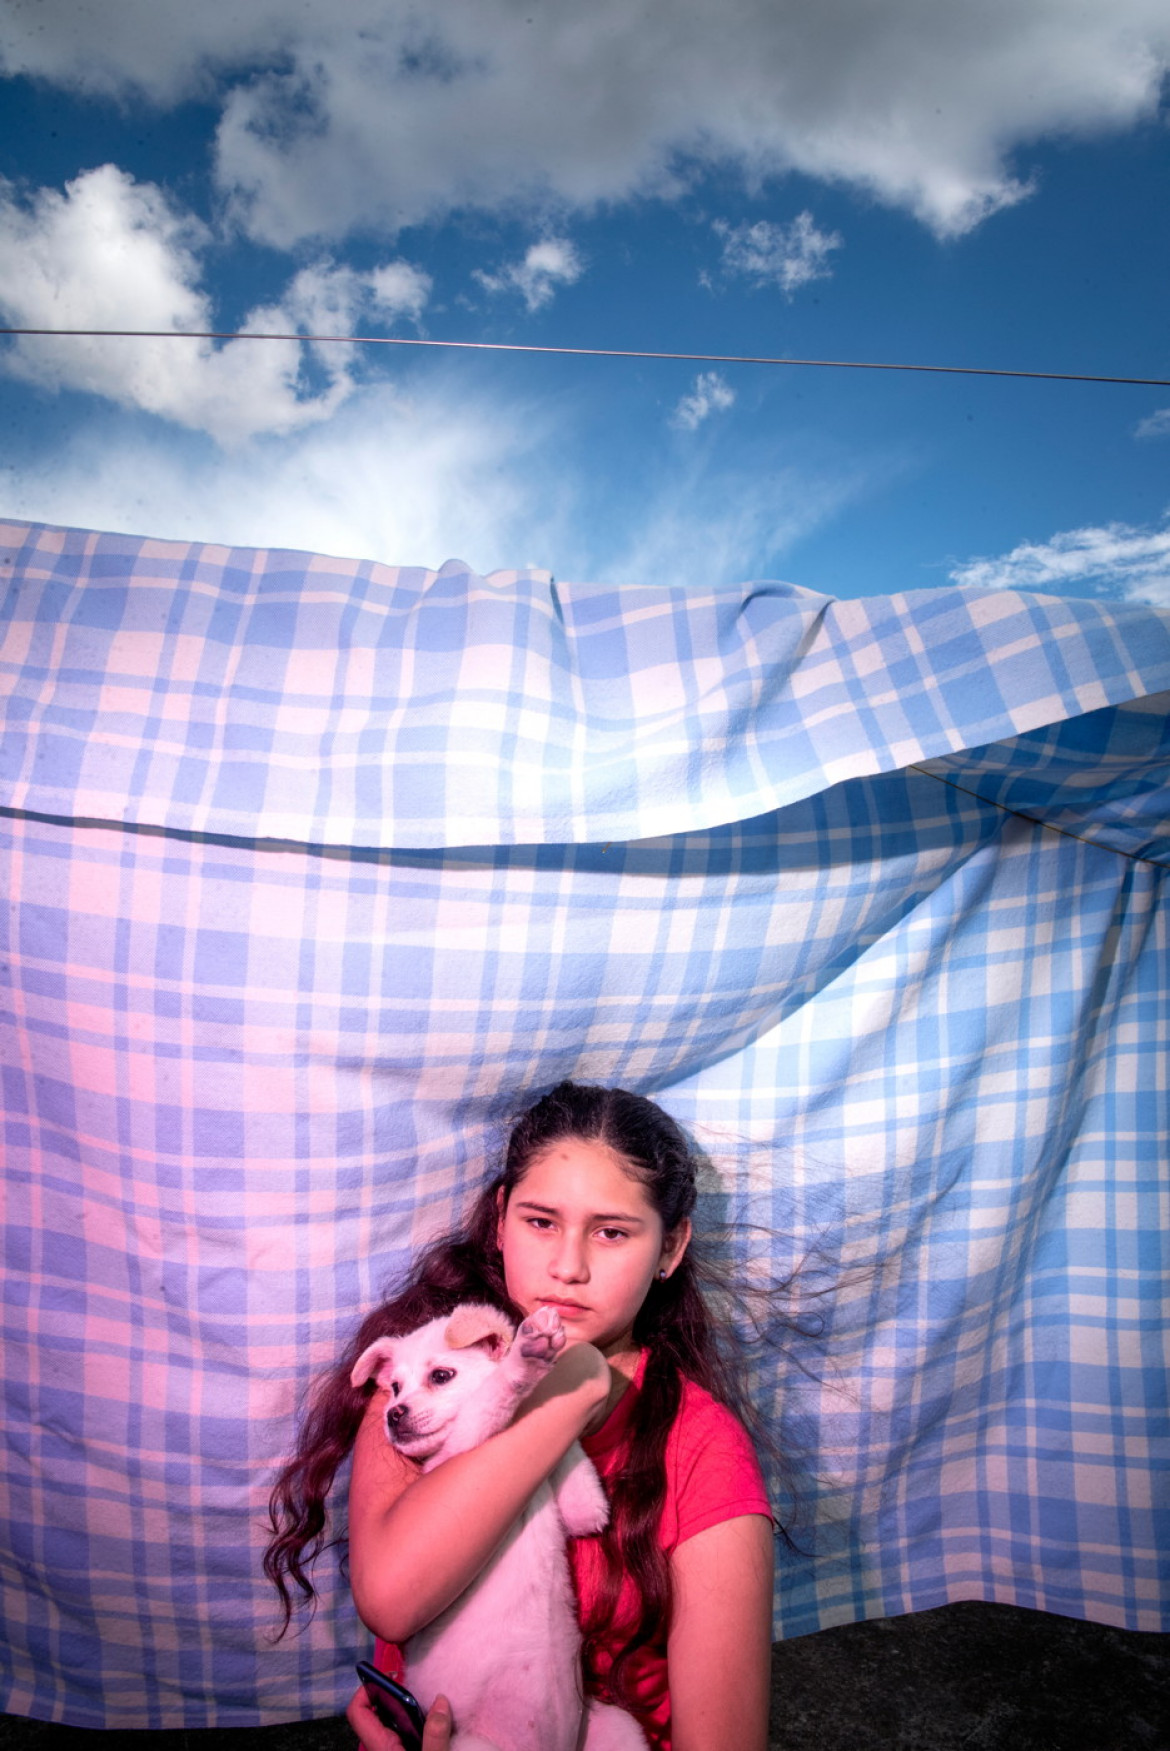 fot. Johanna Alarcon, nominacja z regionu Ameryki Południowej / World Press Photo 2023<br></br><br></br>Valentina to 13-latka, która chce zostać fotografem, a której matka przebywa w więzieniu za posiadanie marihuany. Trwający w Ekwadorze kryzys więziennictwa i polityka karania za narkotyki sprawiają, że rozłąka rodziców z dziećmi jest szczególnie trudna. Wideo i obrazy w tym multimedialnym projekcie koncentrują się na wyobraźni i doświadczeniach Valentiny jako młodej artystki, której bogaty świat wewnętrzny nie jest zdefiniowany przez uwięzienie matki. 
<br></br><br></br>
Pochodząca z Ekwadoru autorka opowieści wizualnych i fotoreporterka Johanna Alarcón poznała Valentinę i jej matkę podczas pracy z więźniami nad projektami artystycznymi. Członkowie jej własnej rodziny zostali uwięzieni. Głęboka osobista więź Alarcón z tematem umożliwiła to złożone, oparte na współpracy i wielowymiarowe przedstawienie historii życia Valentiny. Połączenie fotografii analogowej i cyfrowej z wideo, animacją i dźwiękiem daje wyjątkowe spojrzenie na życie wewnętrzne młodej artystki, która nadaje sens światu poprzez swoją fotografię.